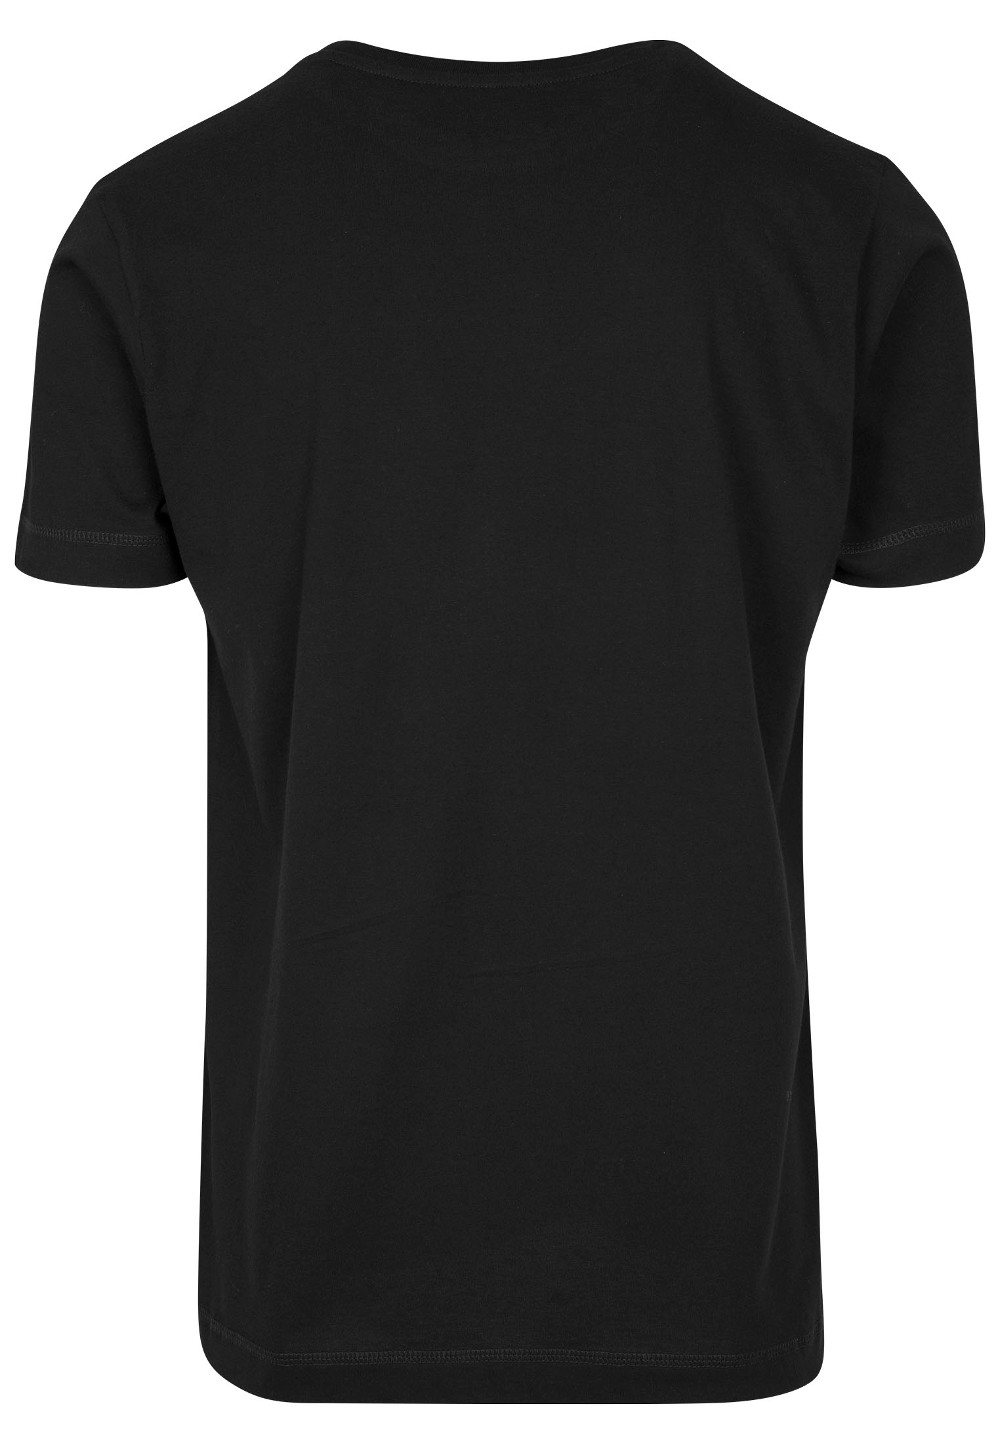 T-shirt Rammstein - Flugel